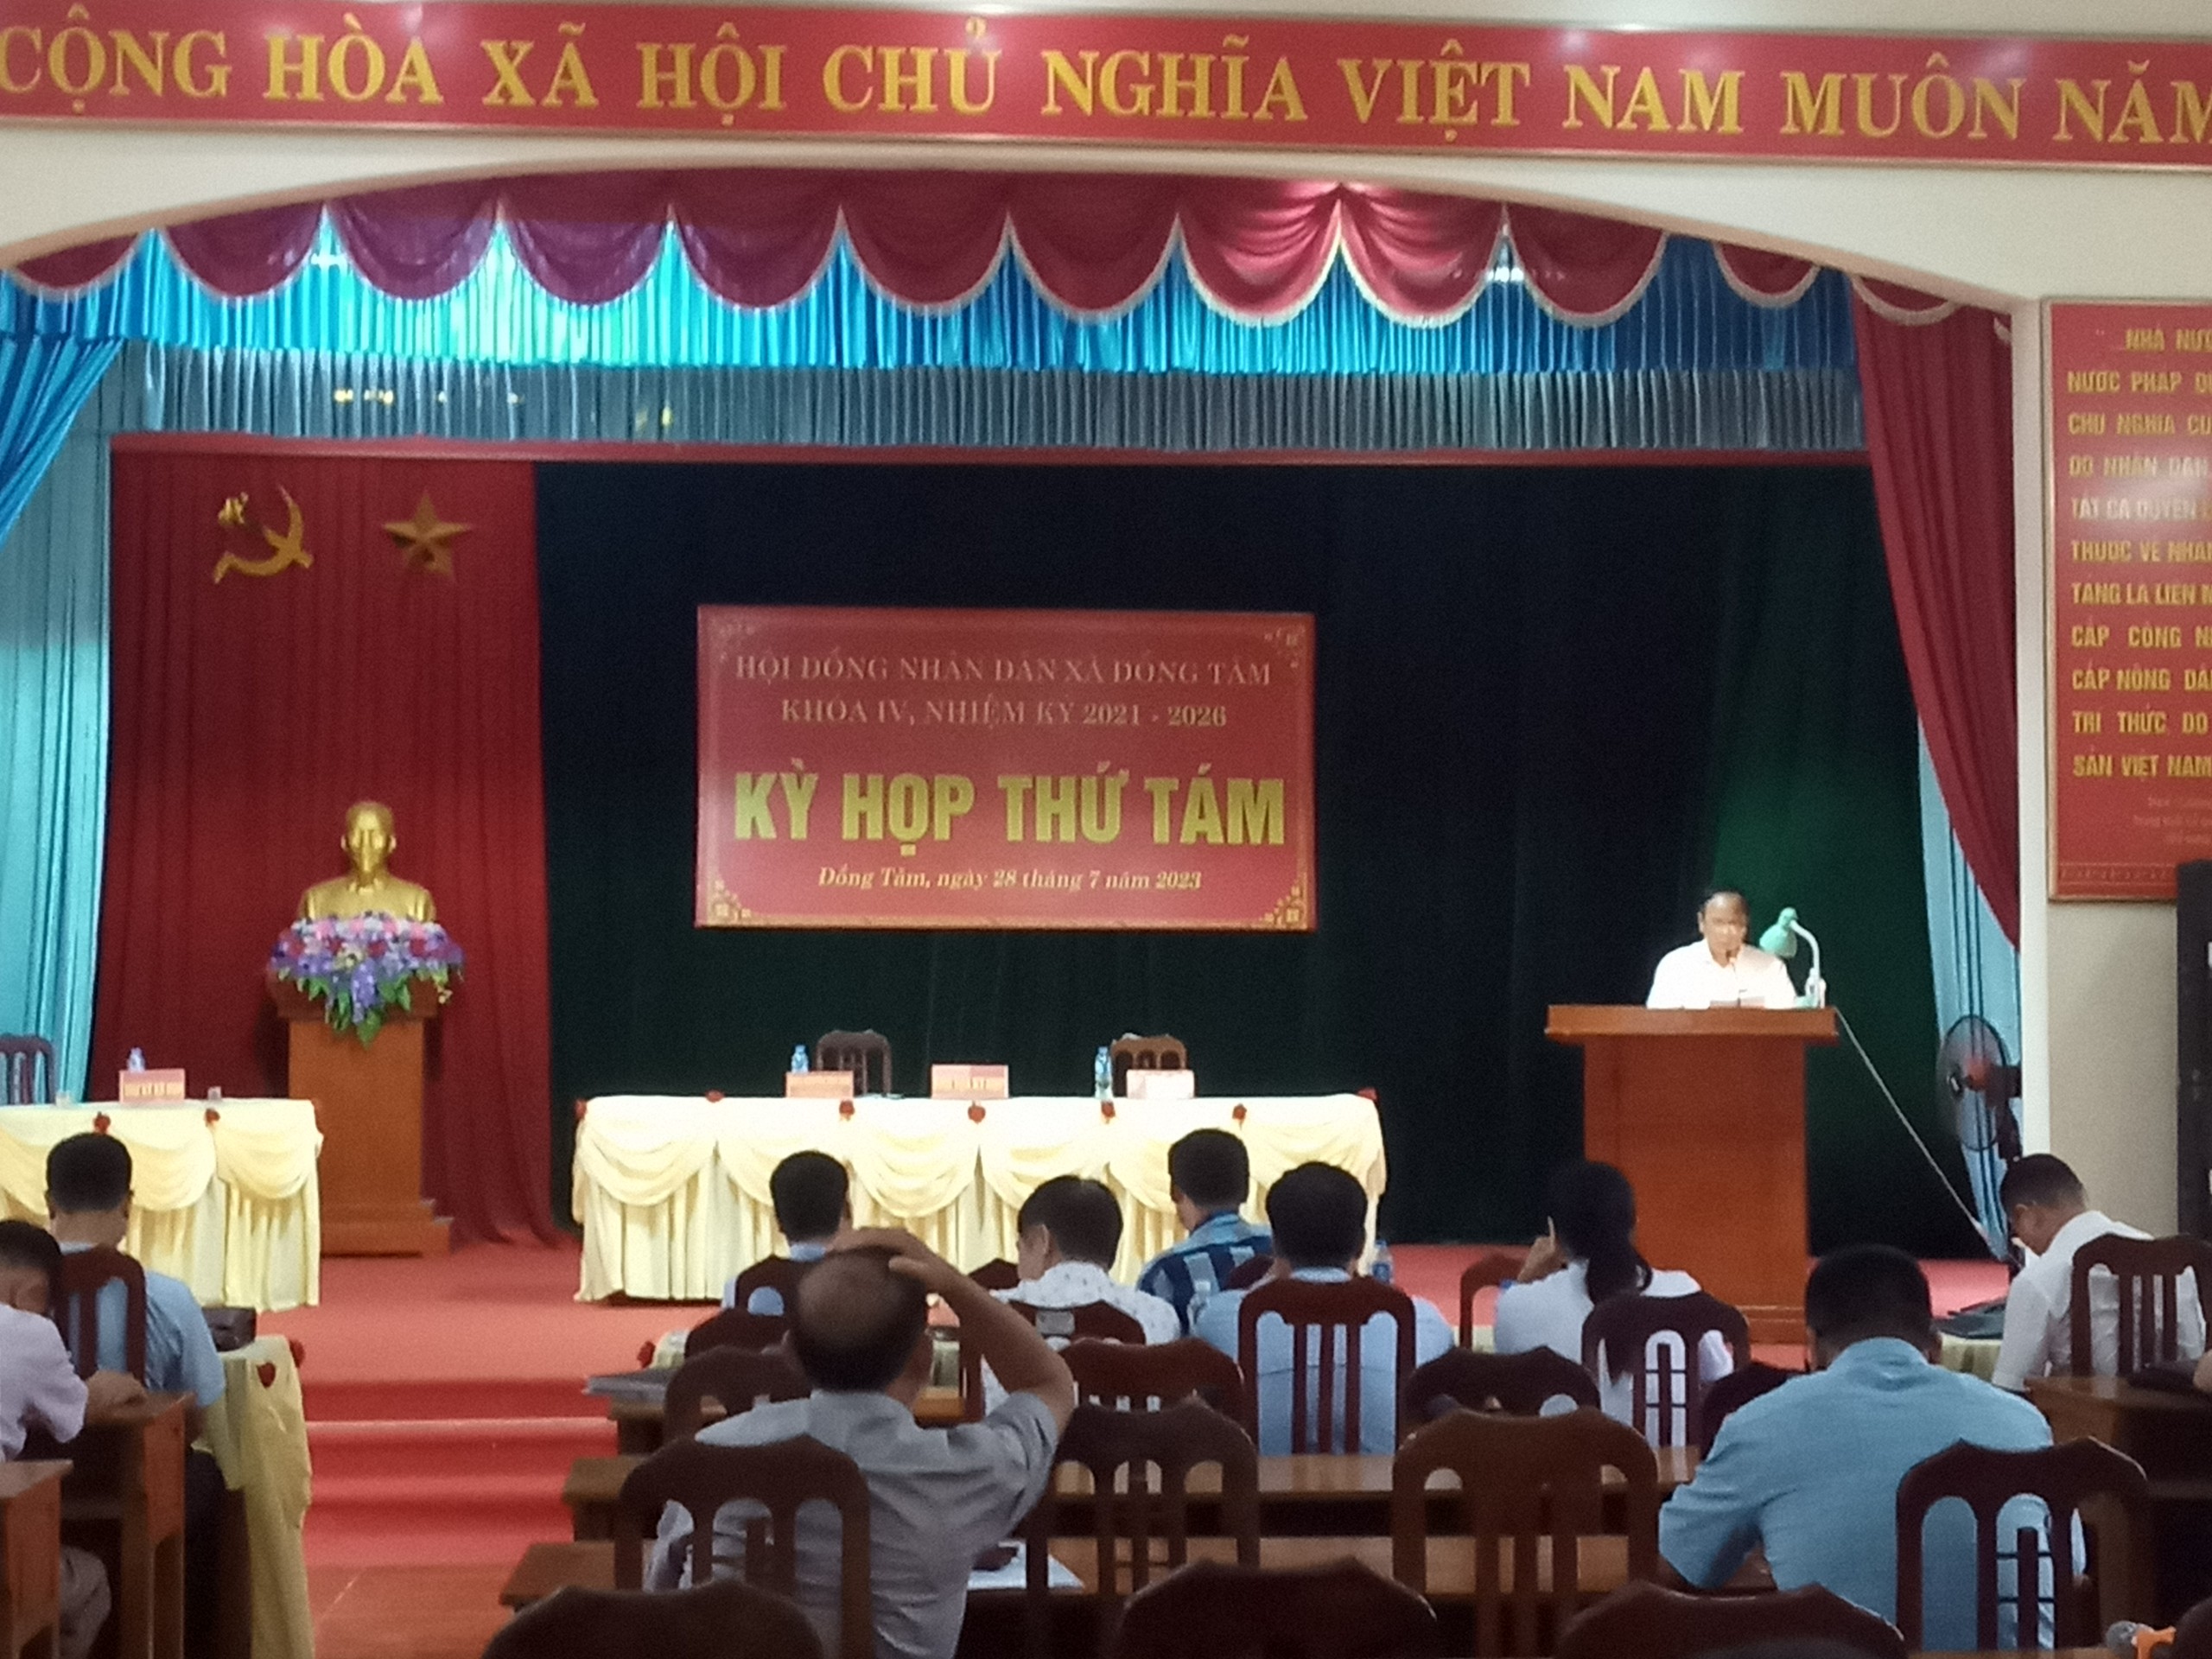 HĐND xã Đồng Tâm tổ chức kỳ họp thứ Tám Khóa IV, nhiệm kỳ 2021 - 2026